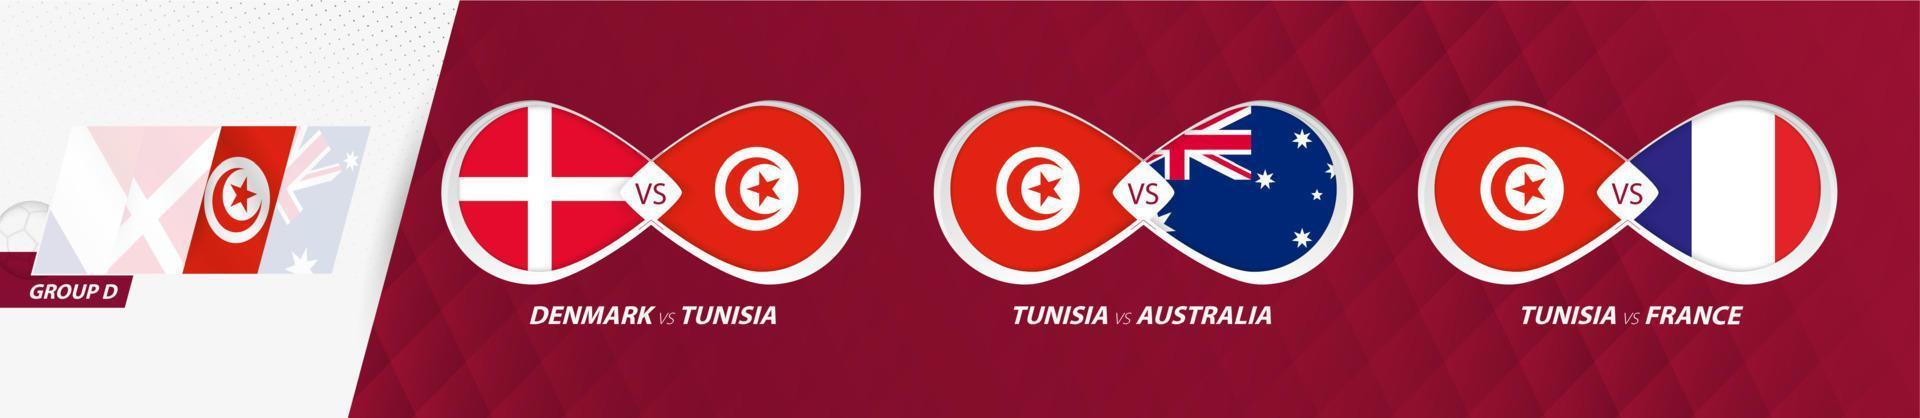 matchs de l'équipe nationale tunisienne dans le groupe d, compétition de football 2022, icône de tous les jeux en phase de groupes. vecteur